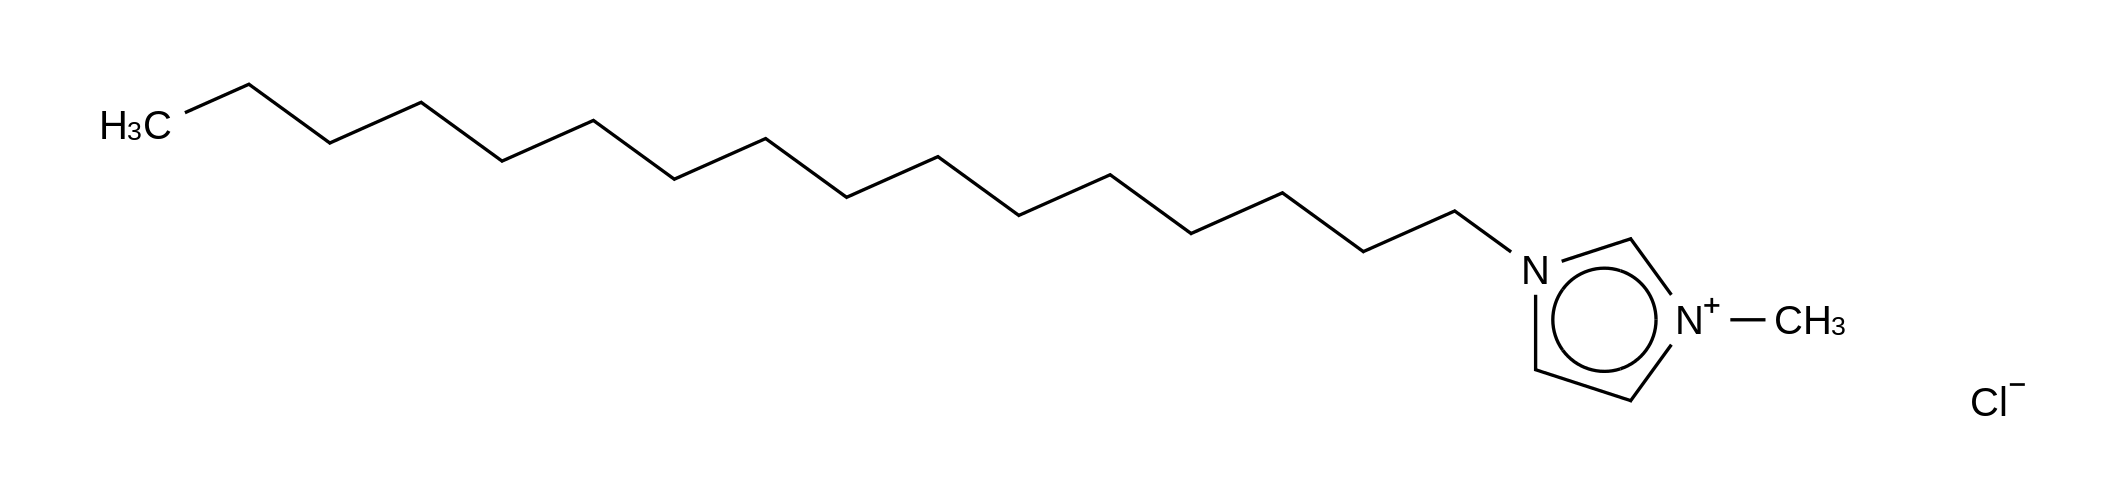 1-Hexadecyl-3-methylimidazolium Chloride